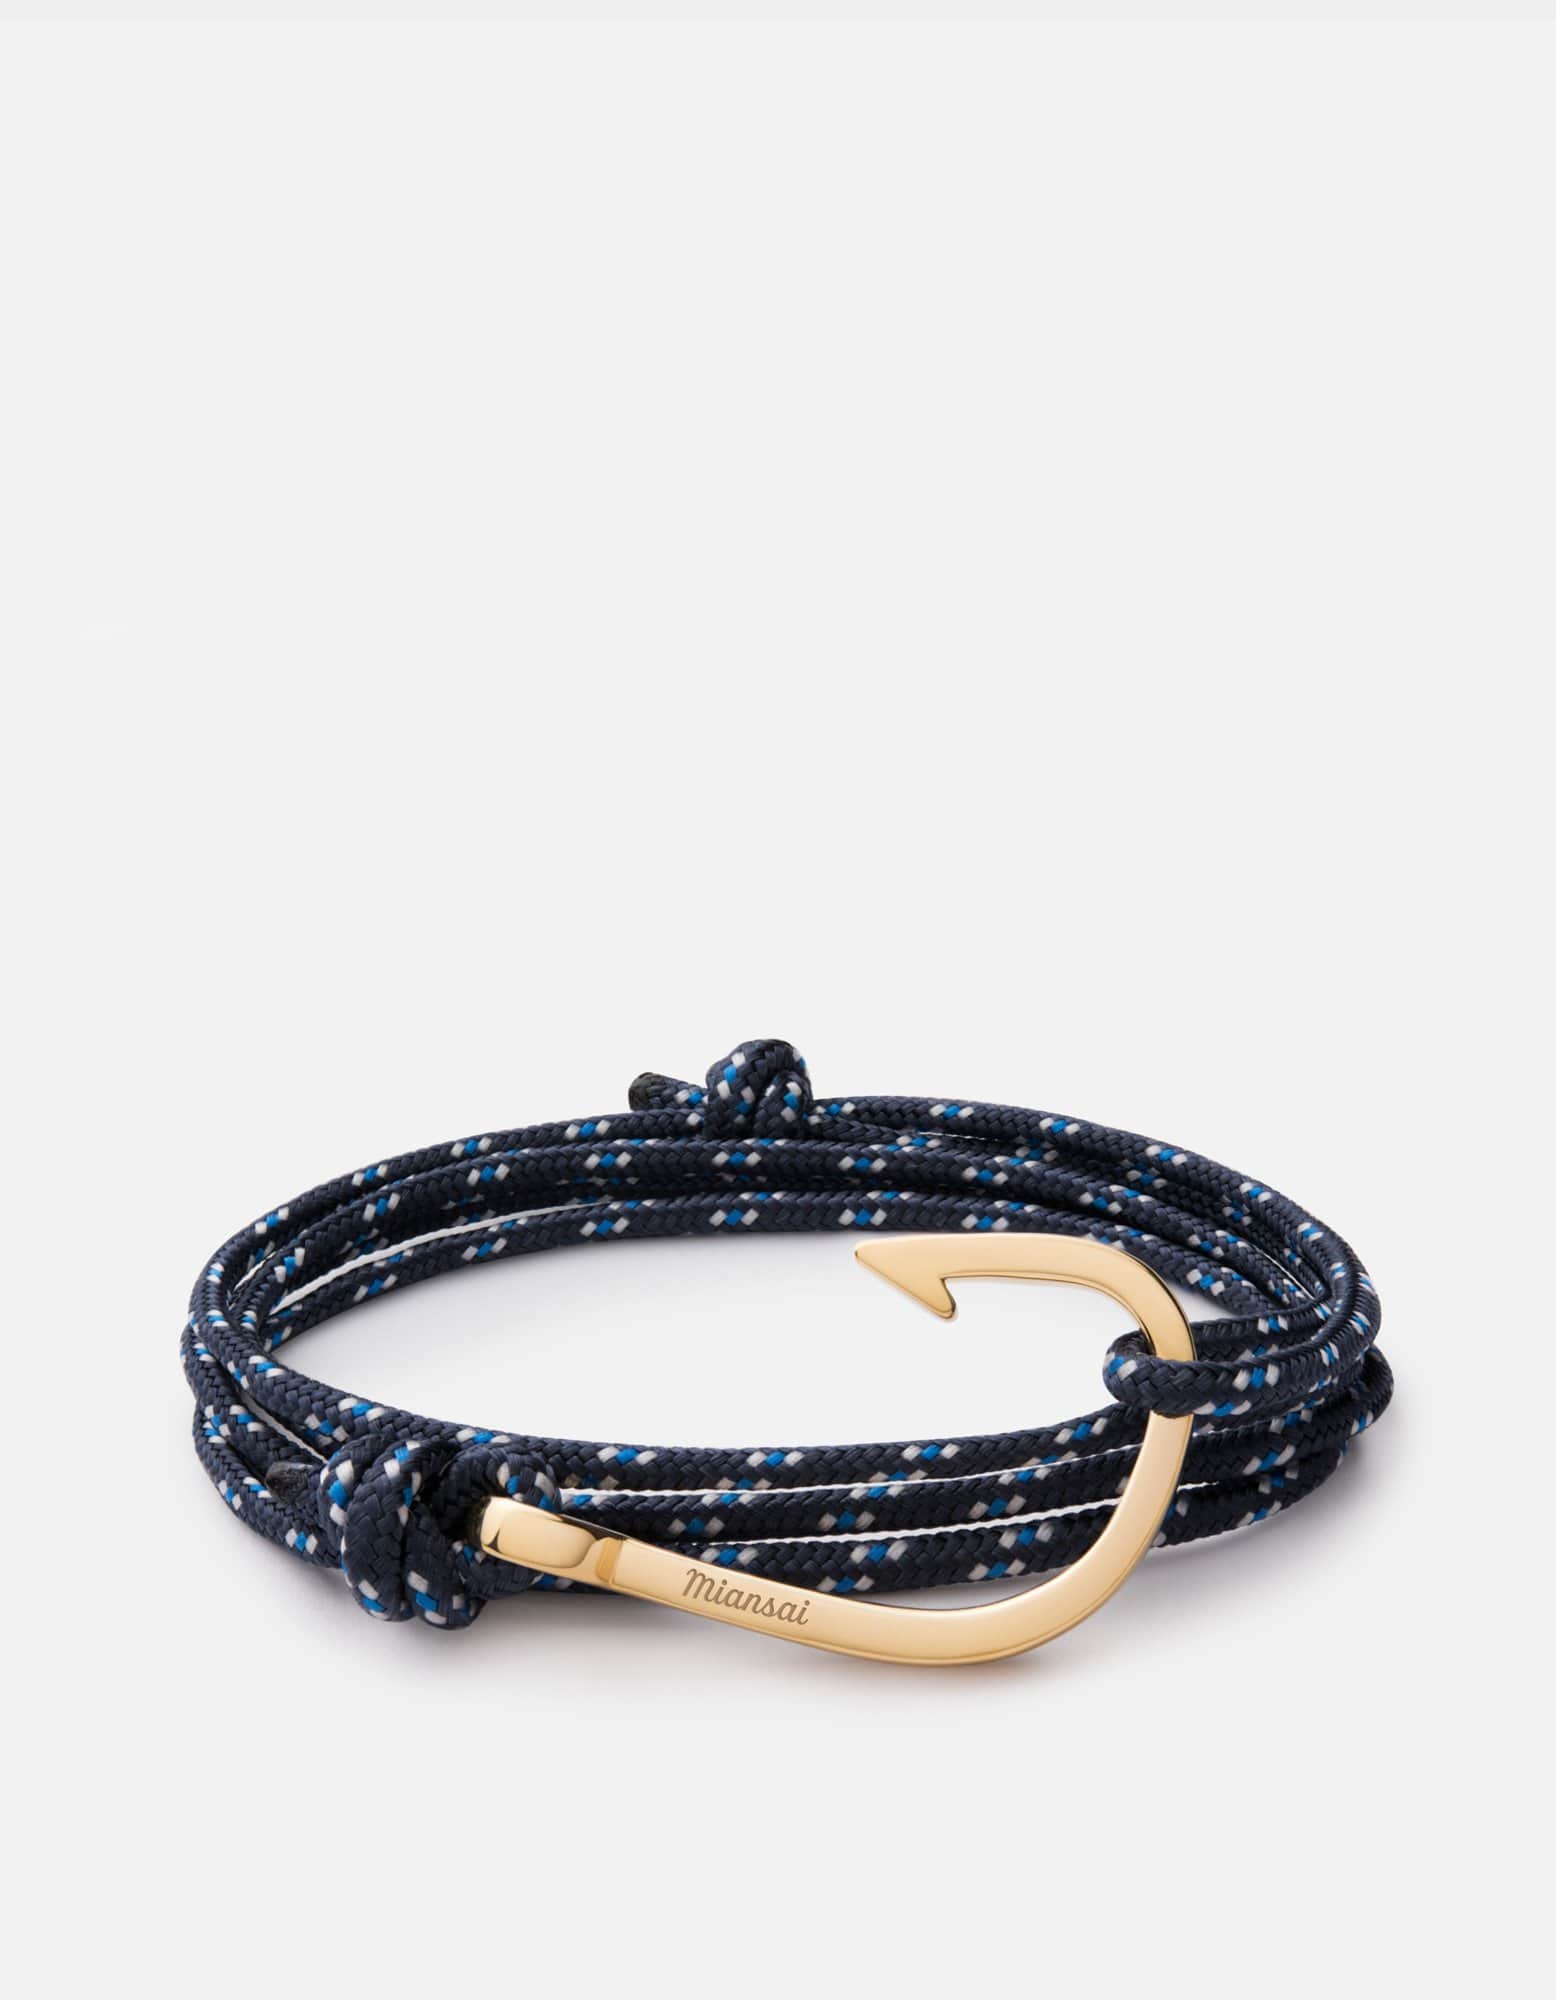 Miansai Hook Rope Bracelet, Blue, Men's